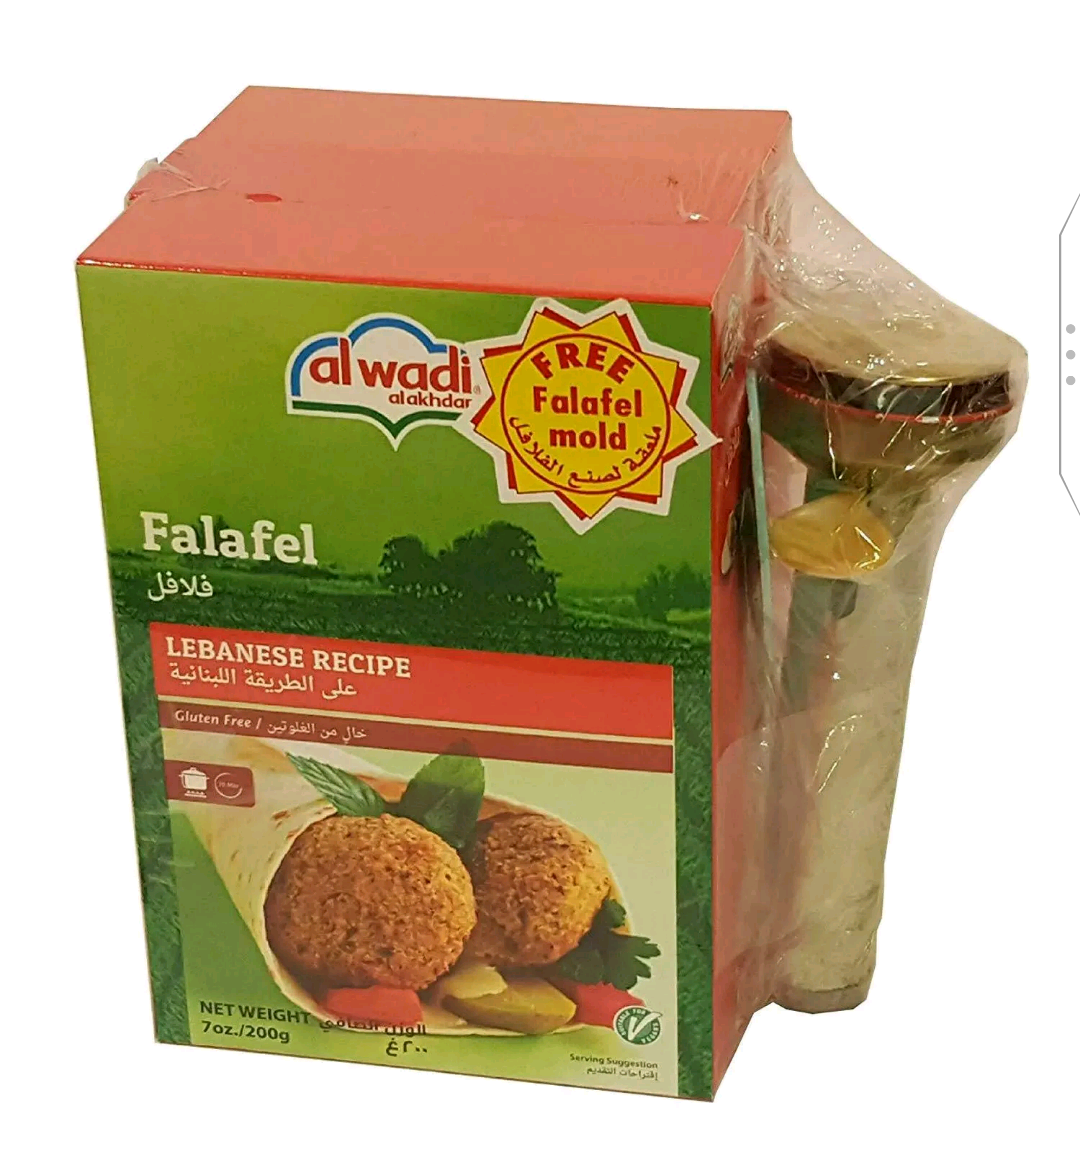 Al Wadi Falafel 3 pack with Promo Mold 600 gr